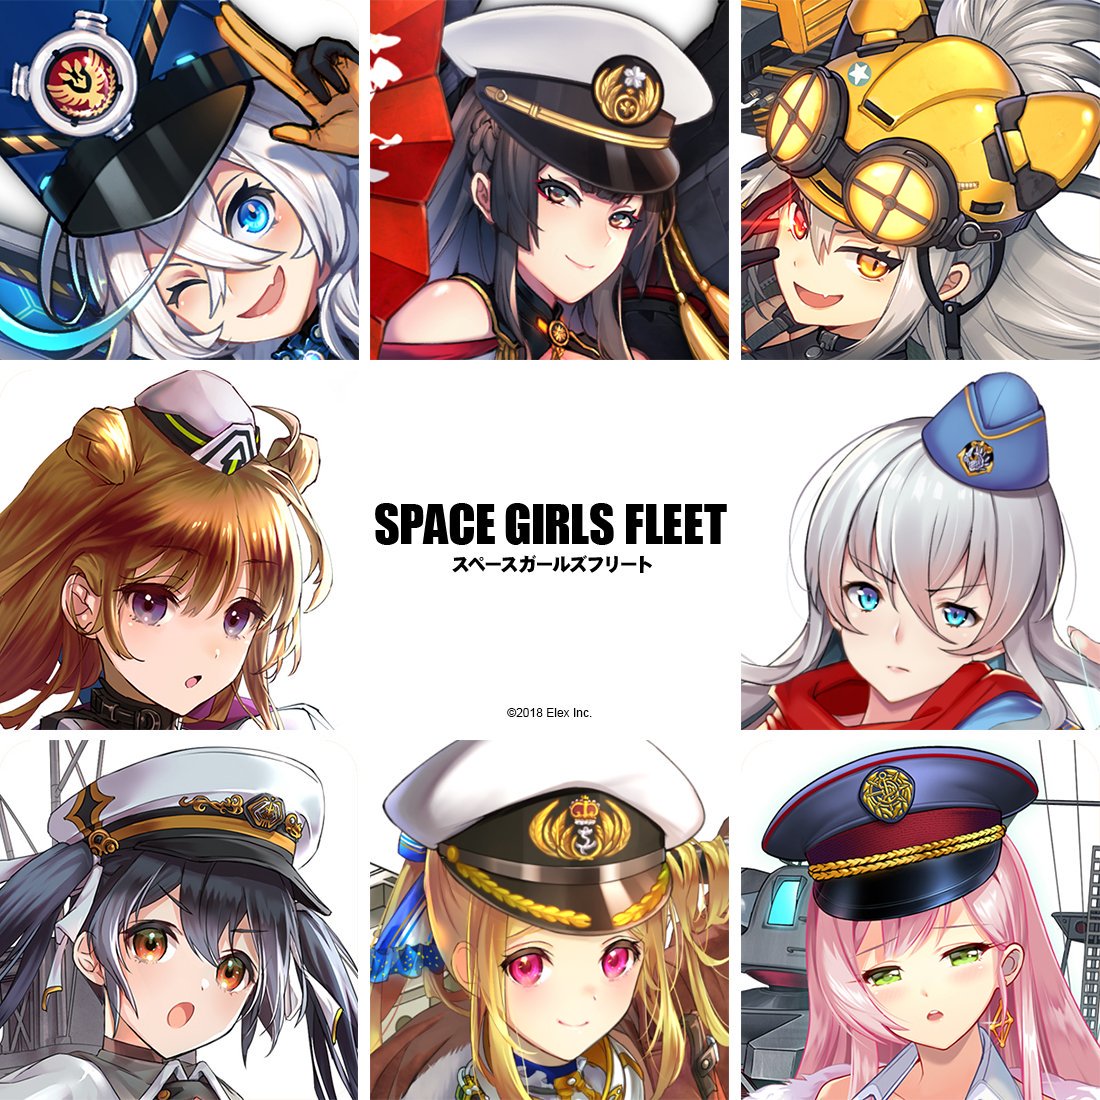 Space Girls Fleet art